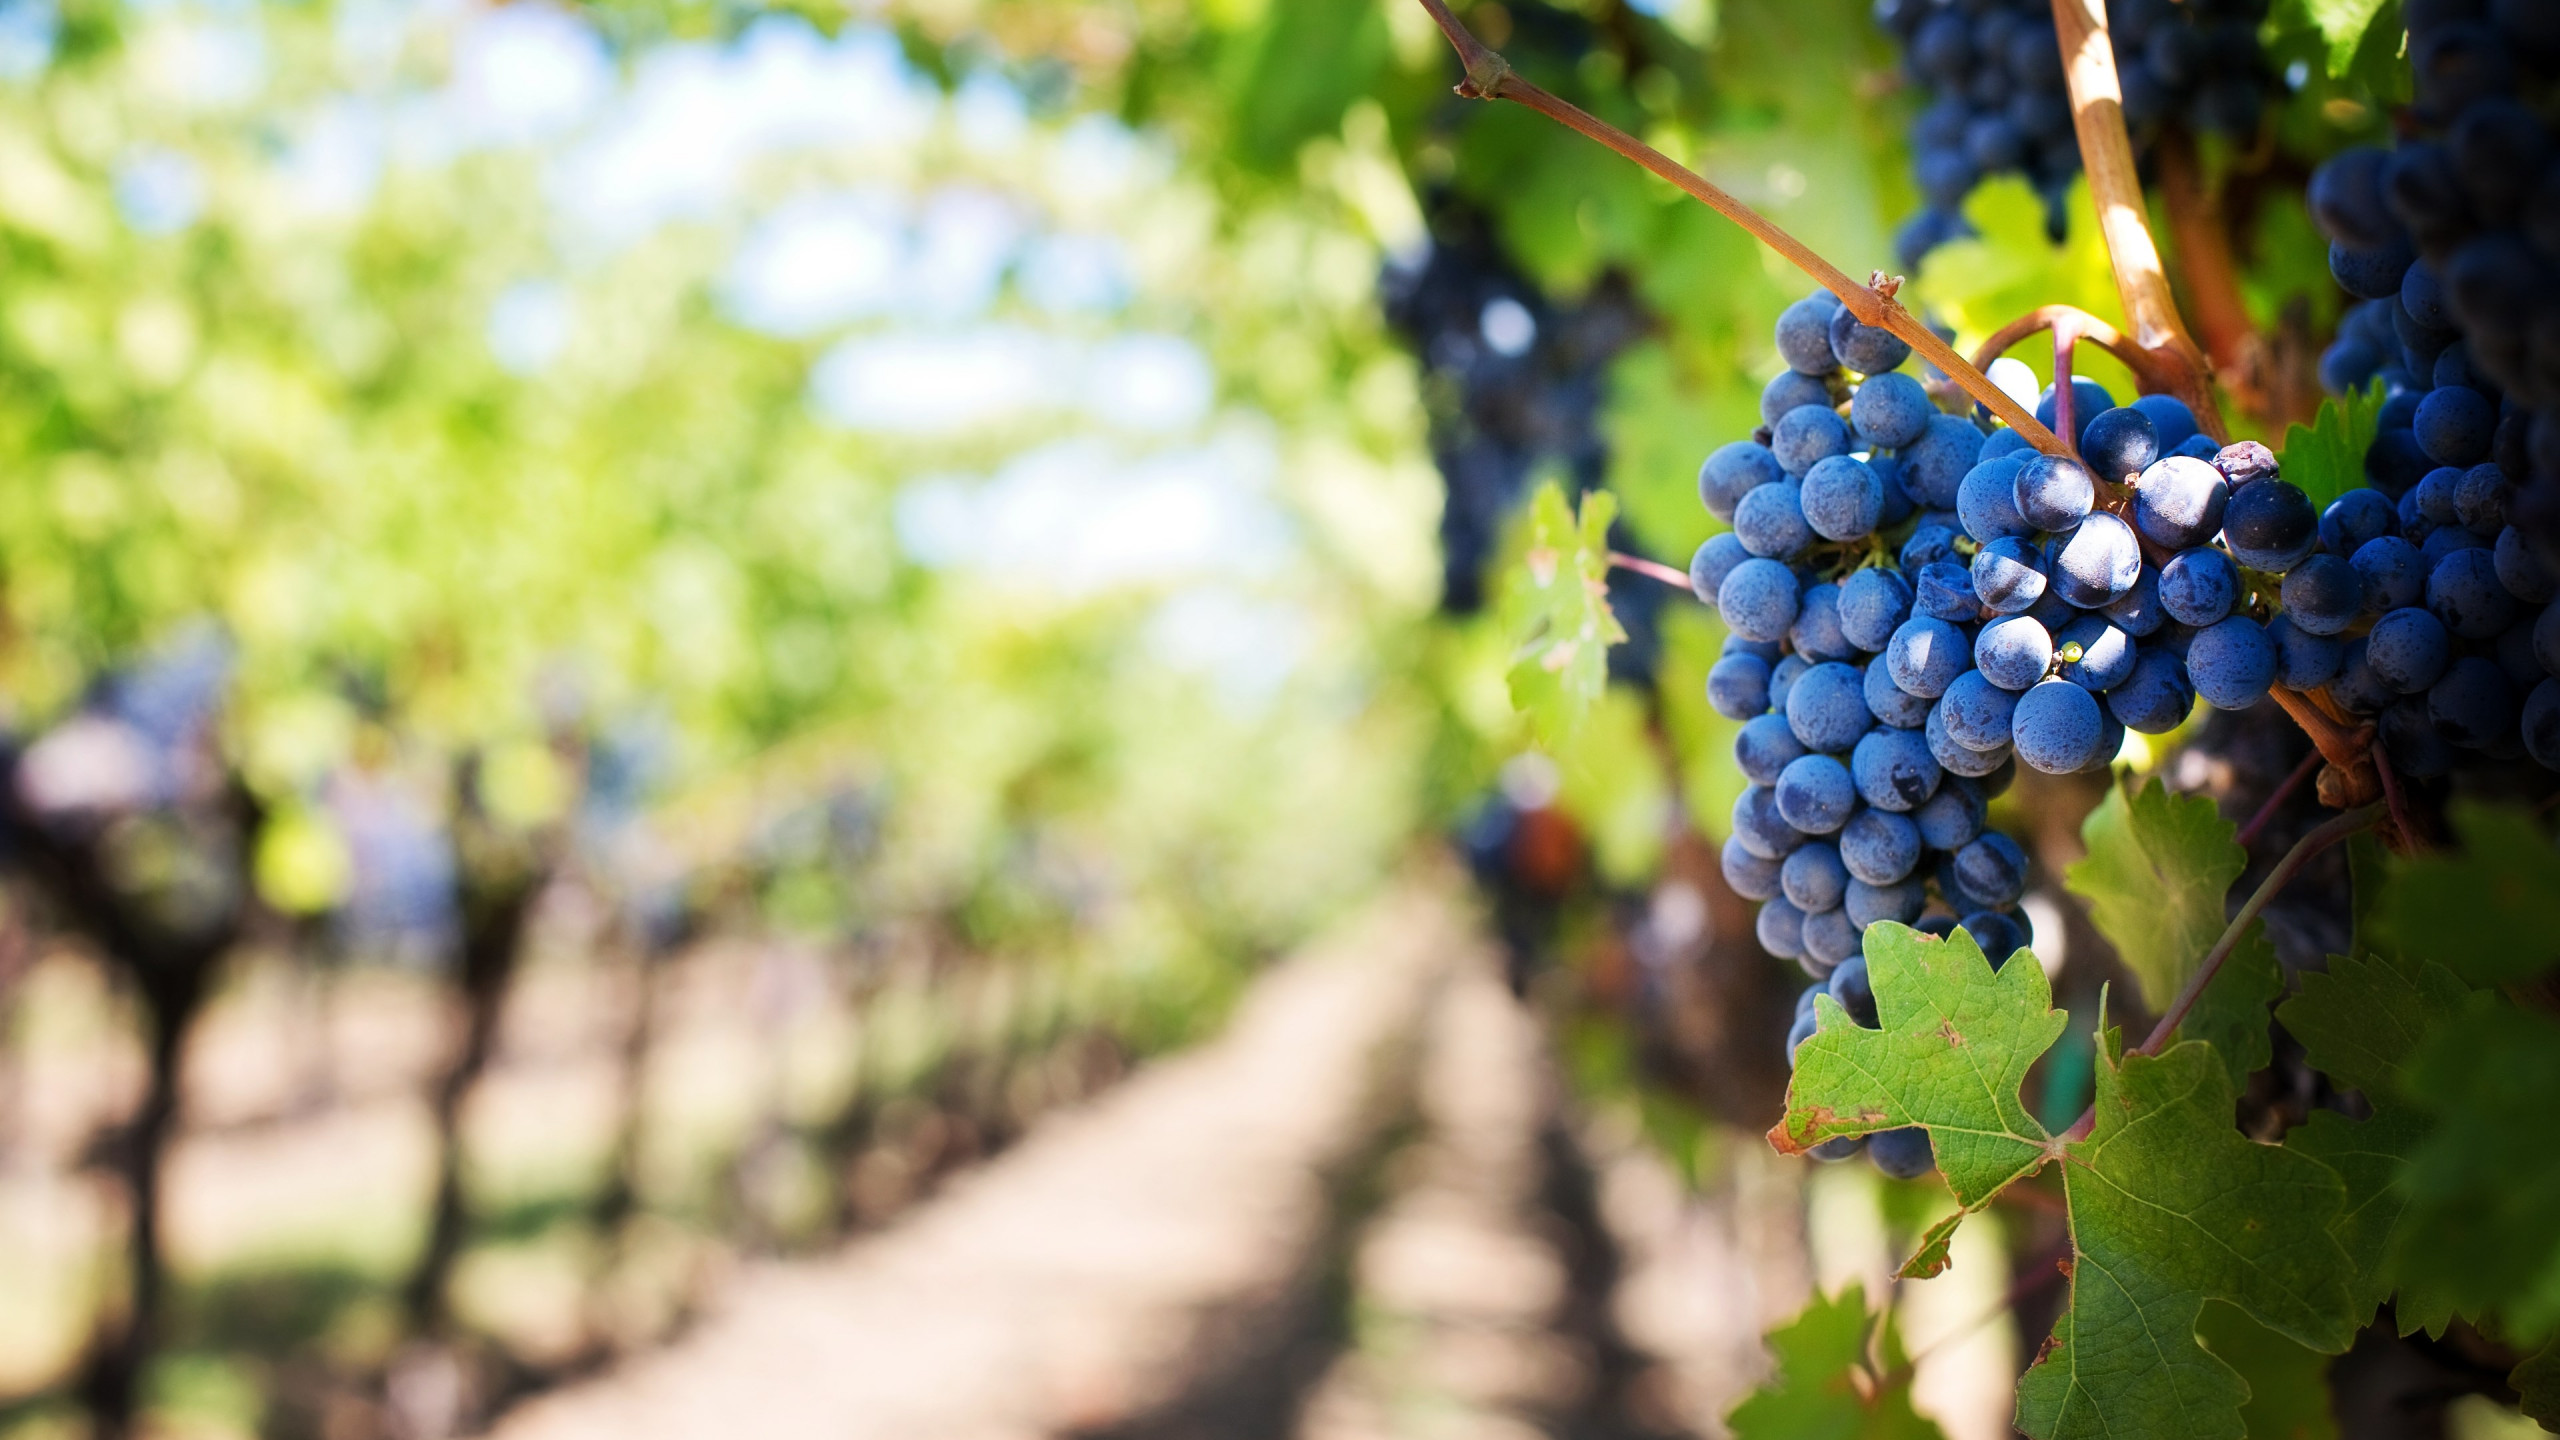 Grapes in vineyard wallpaper 2560x1440